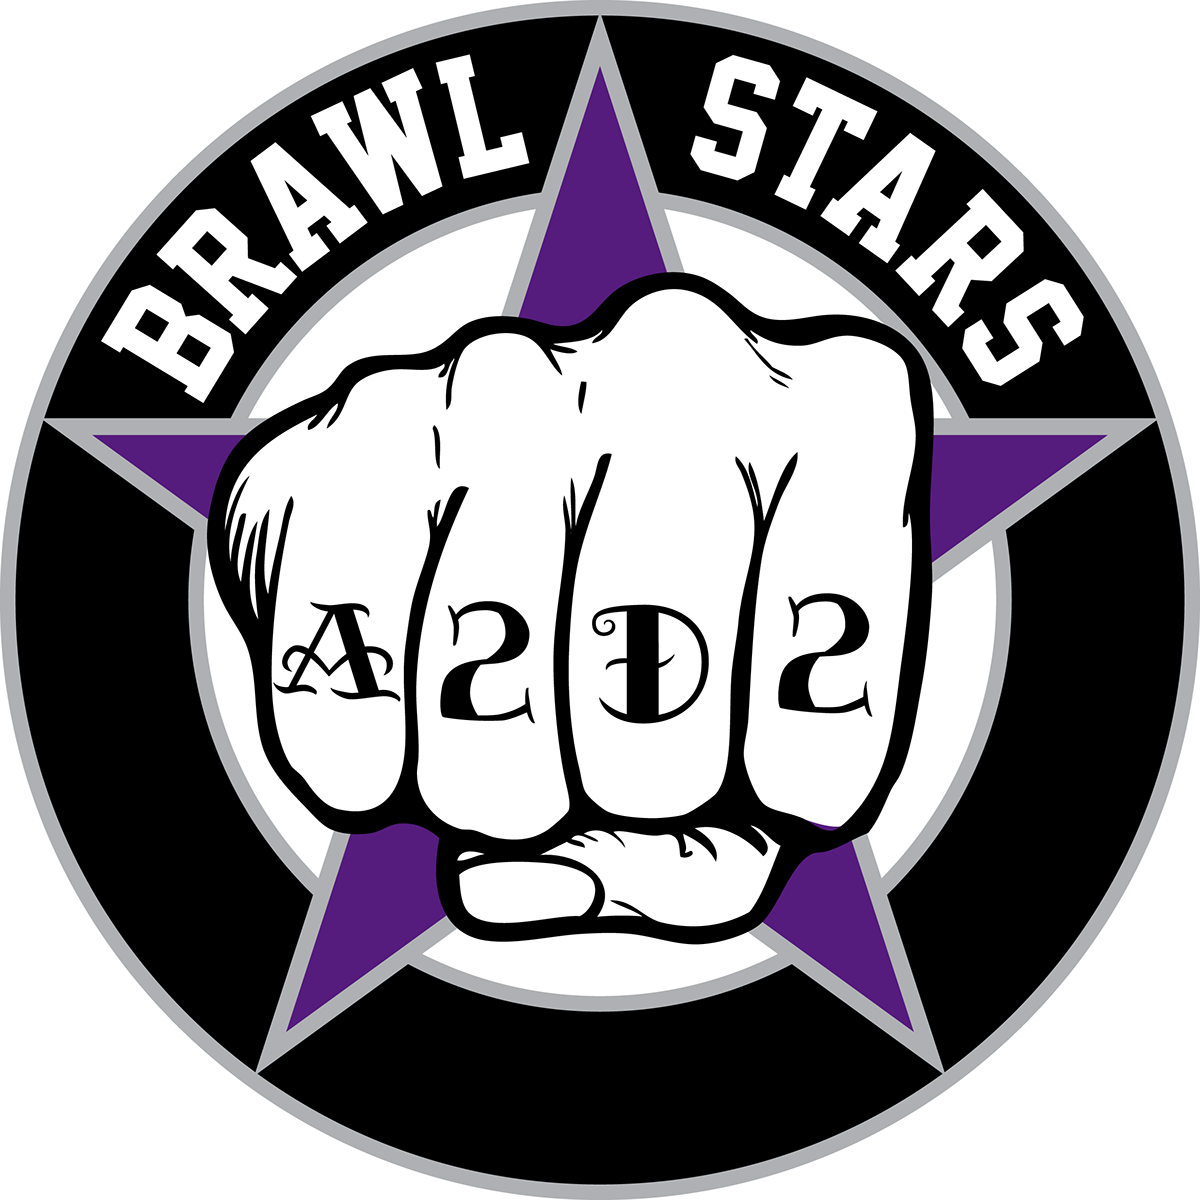 Roller Derby logo fist star A2D2